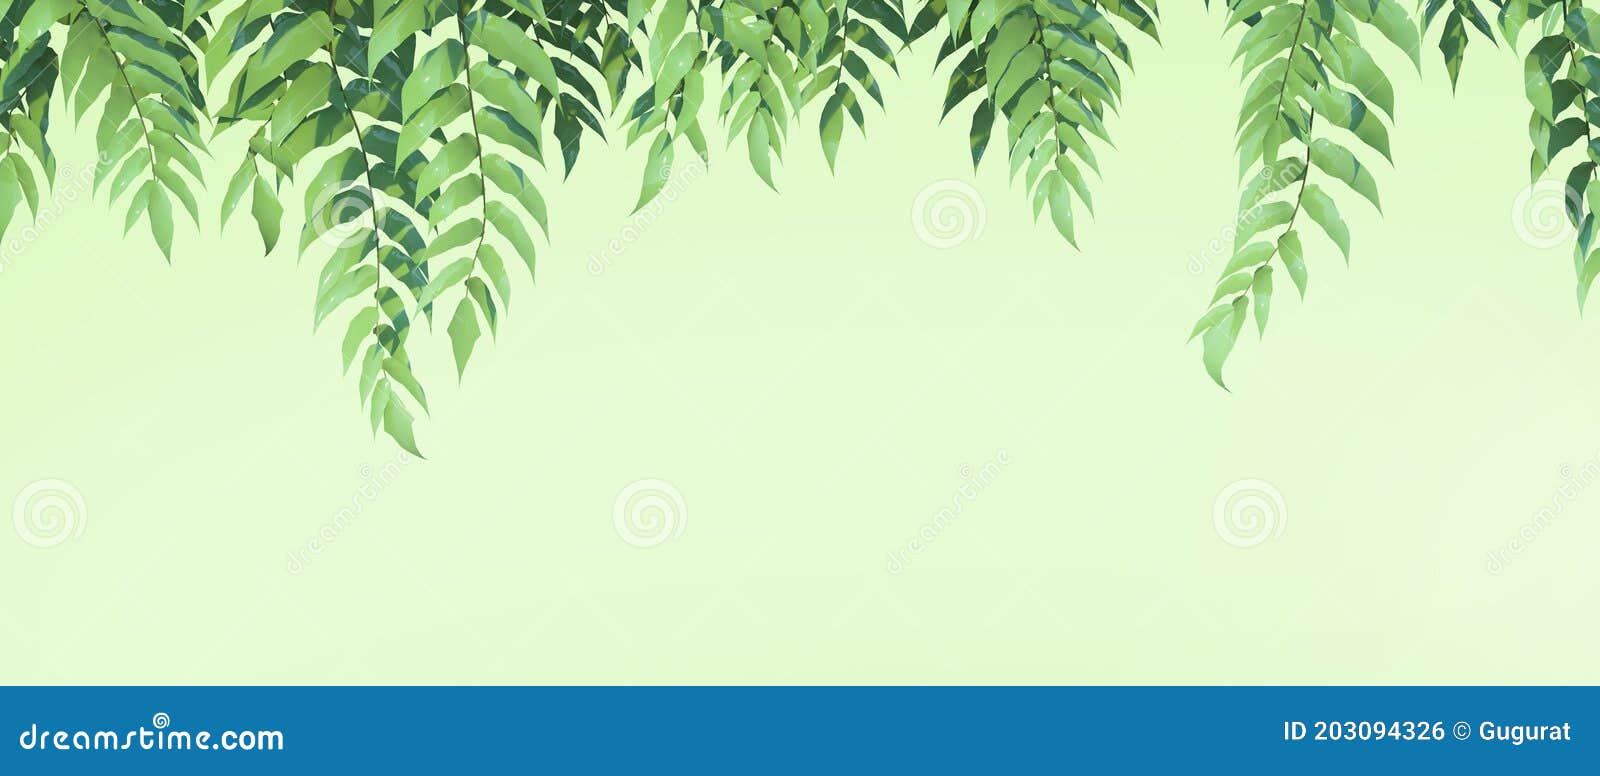 Bức hình với lá cây xanh tự nhiên và banner ngang, thức tỉnh sự tươi mới và thanh tịnh trong cuộc sống của bạn. Bạn sẽ lạc vào không gian xanh mát trong bức hình này và cơ hội để cảm nhận sự yên tĩnh và sự đầy năng lượng.